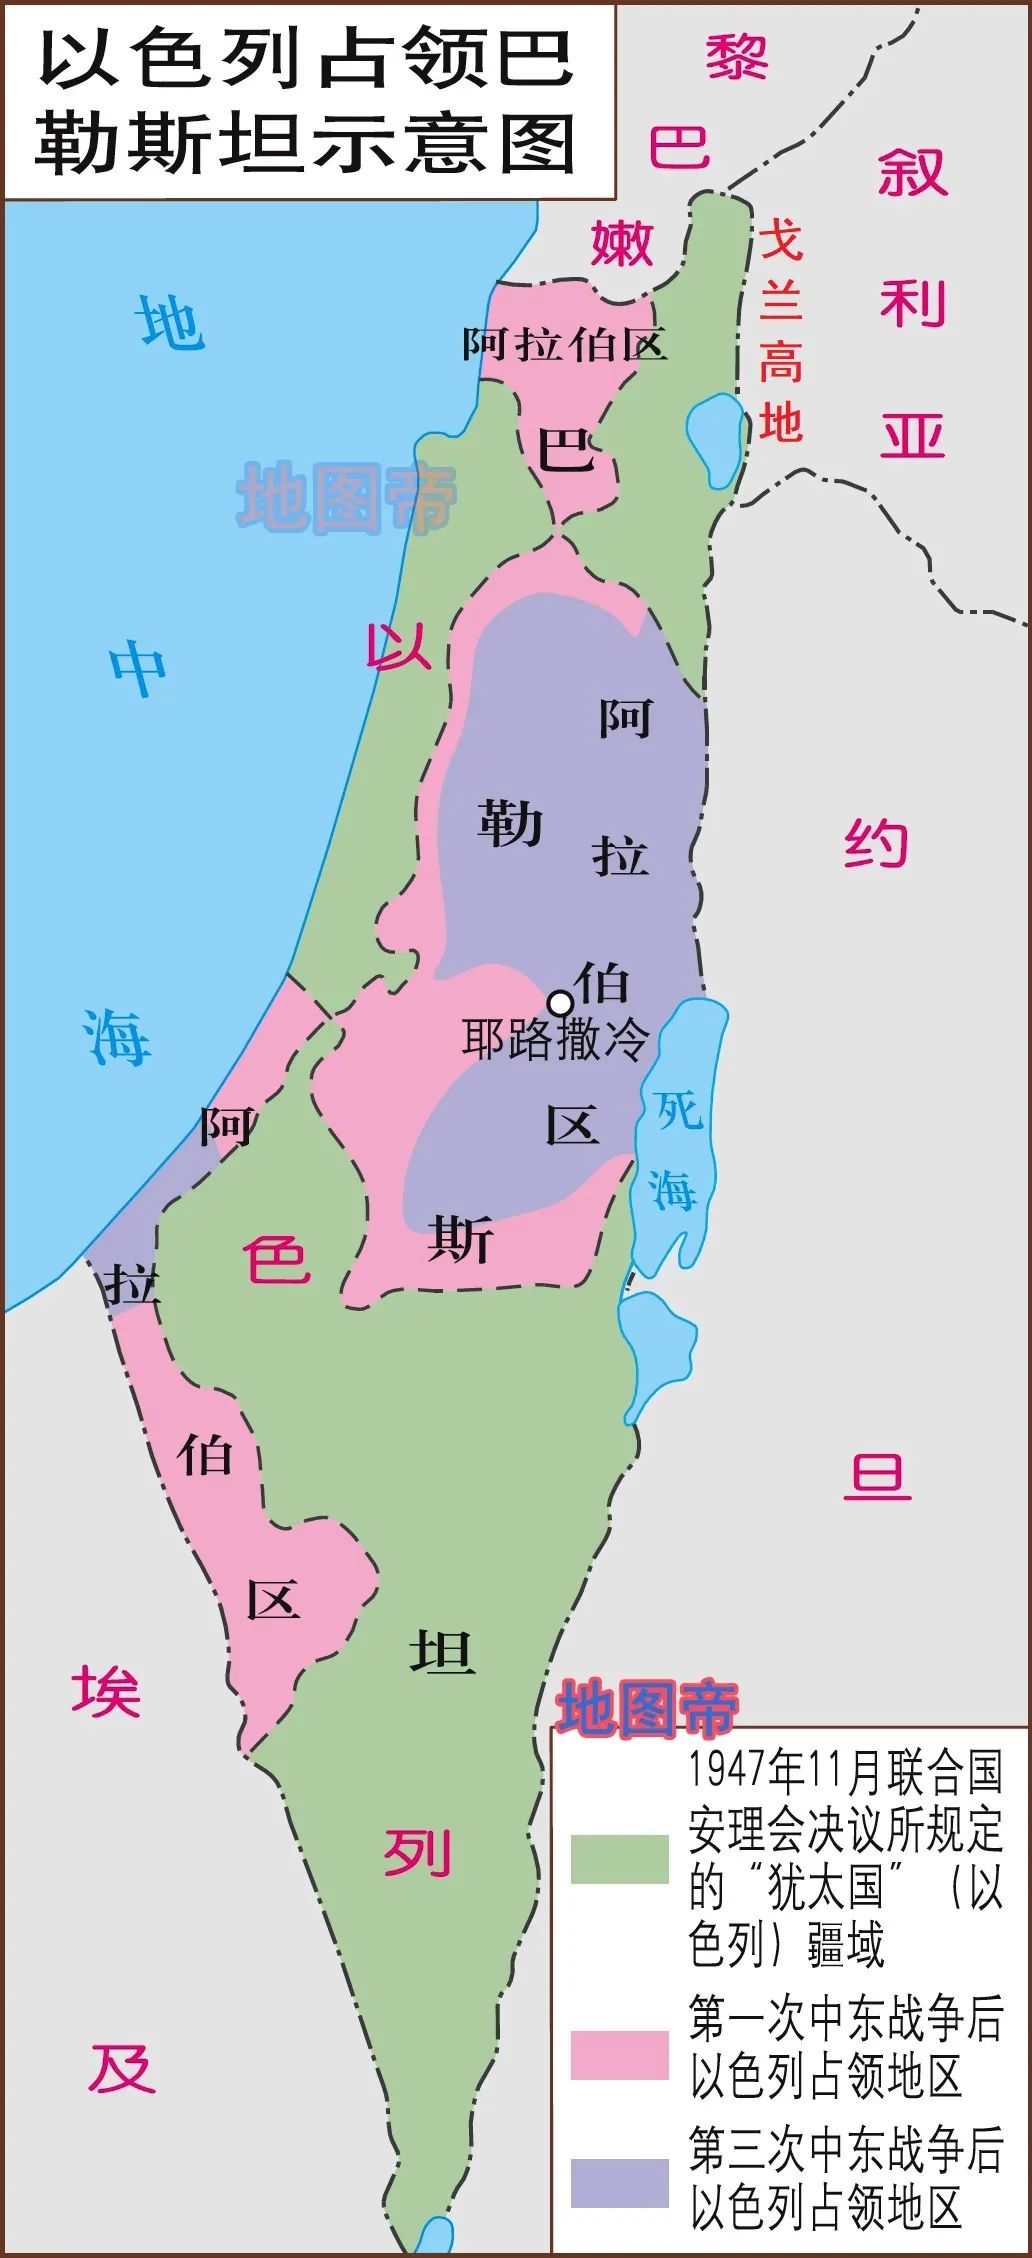 1947年,联合国关于巴勒斯坦分治决议规定,以色列国的面积为1